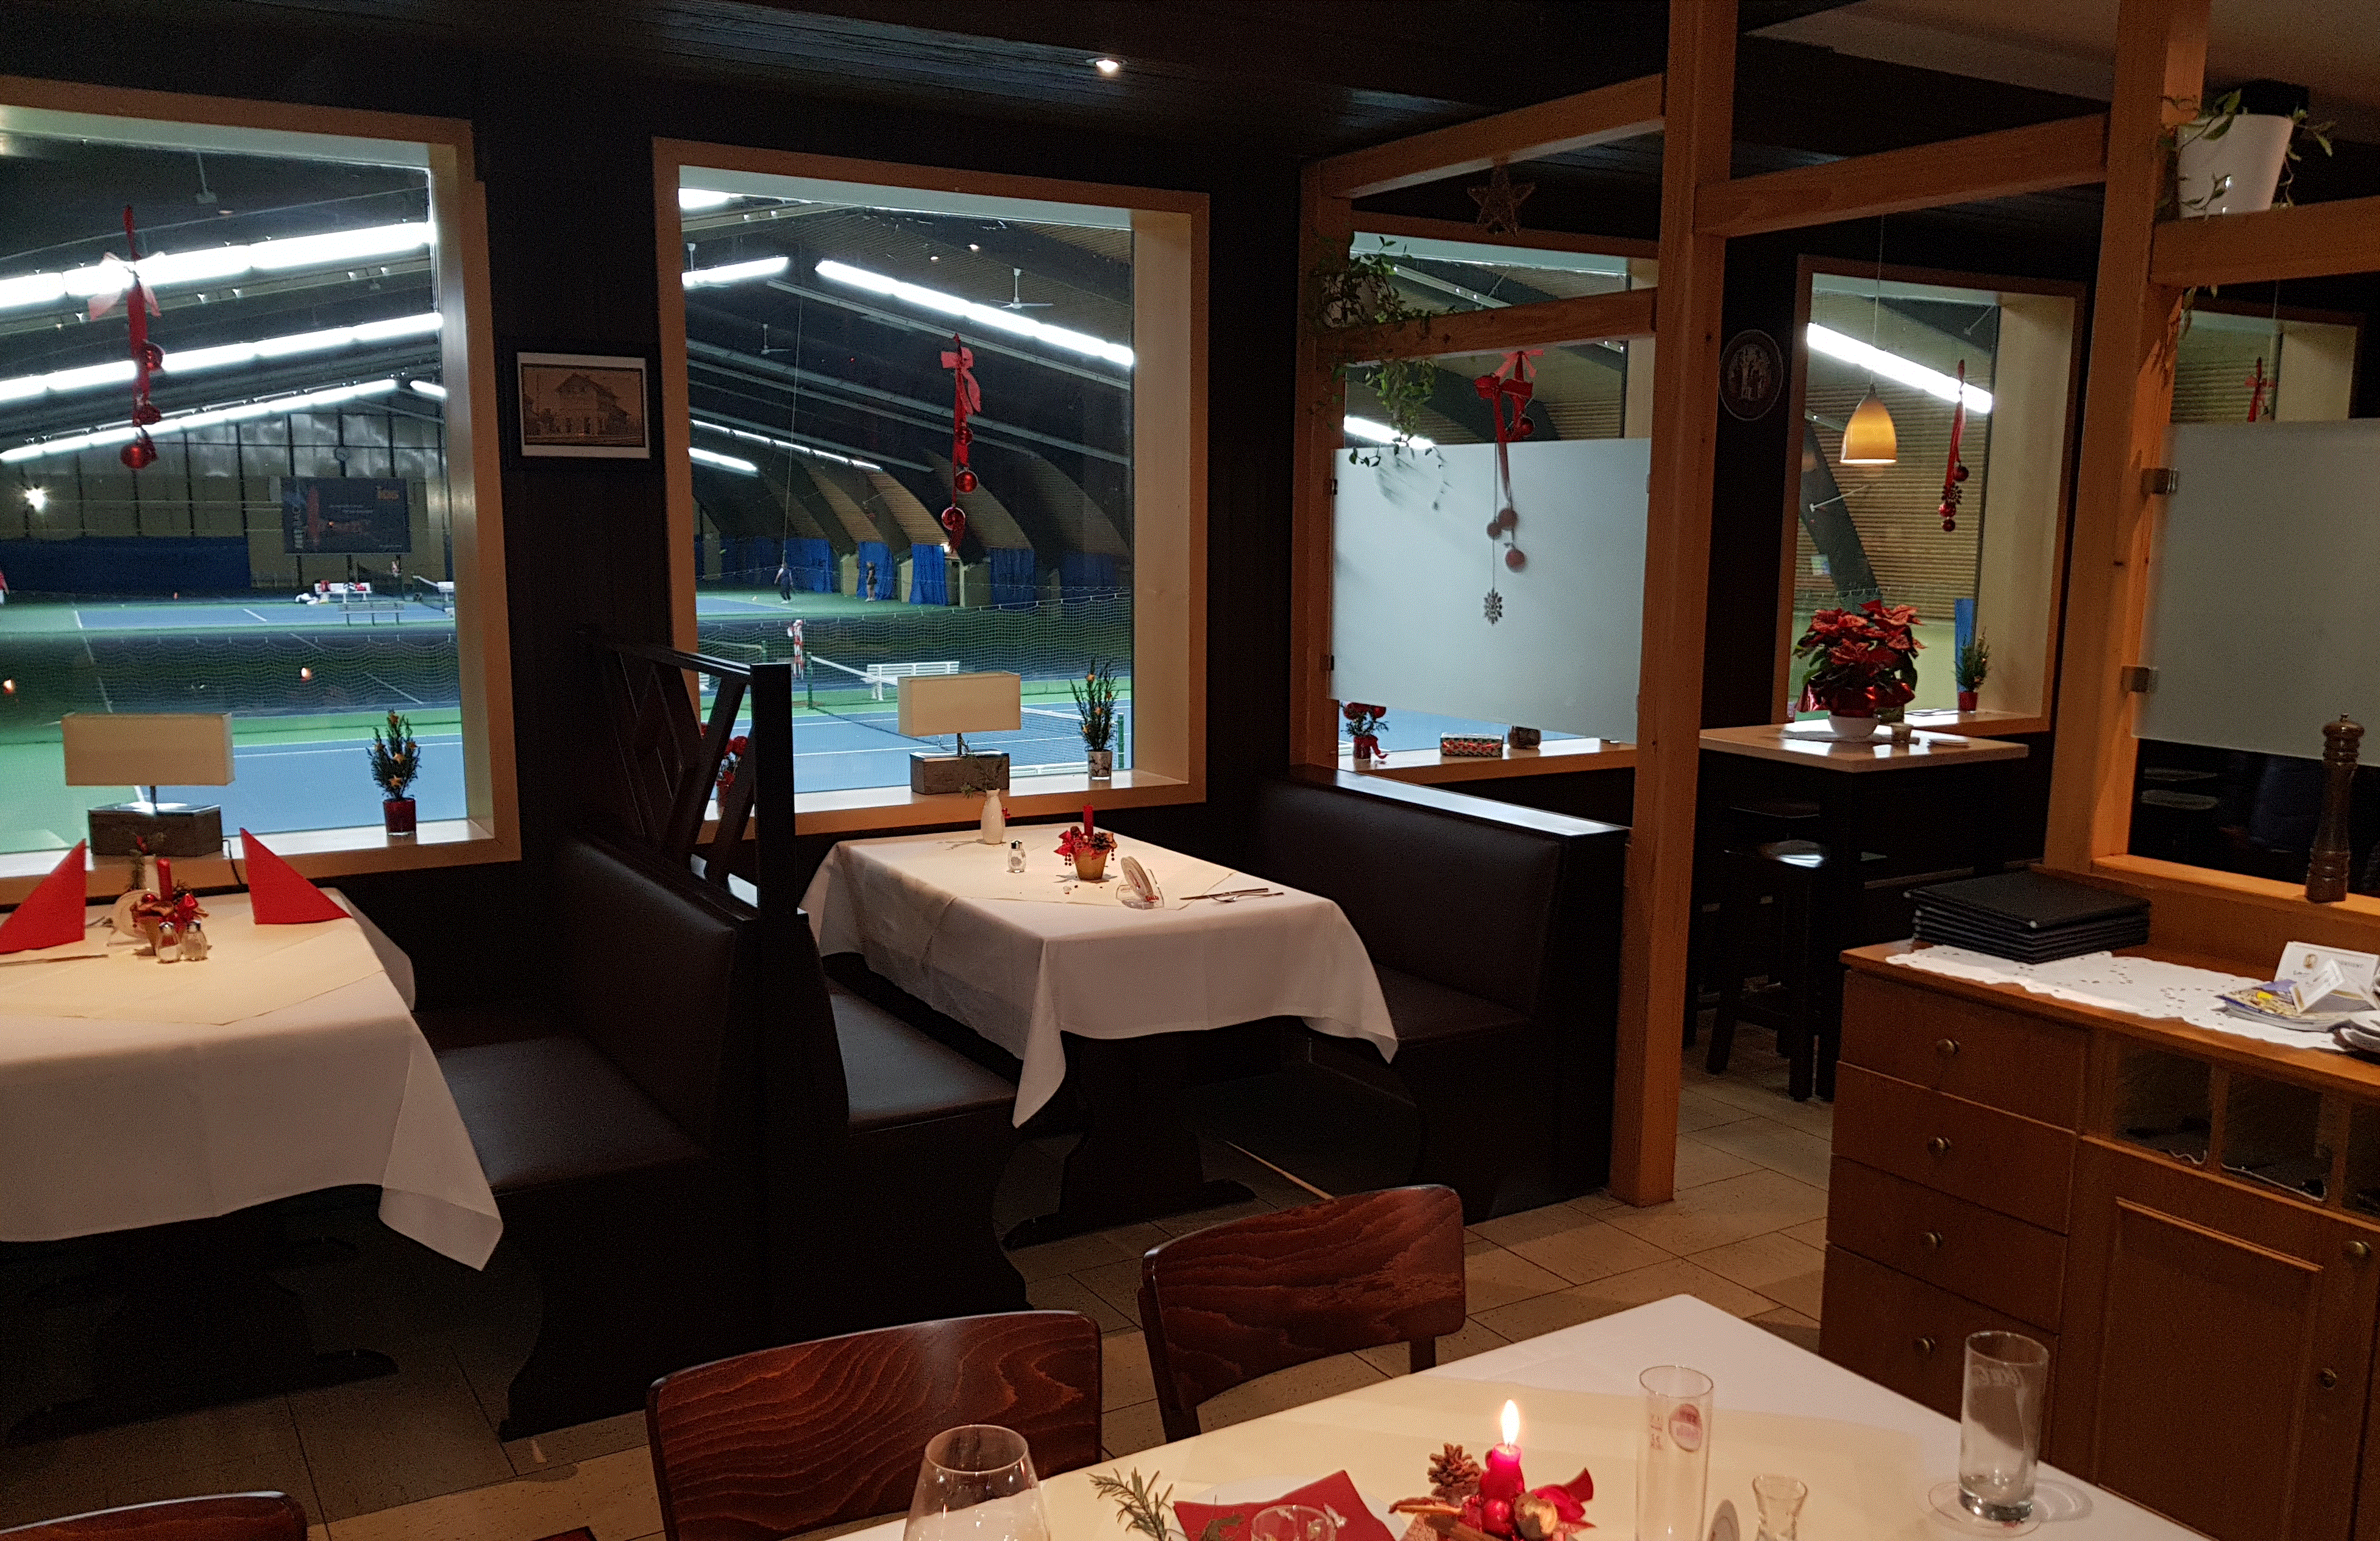 Restaurant mit Blick auf Tennisfelder